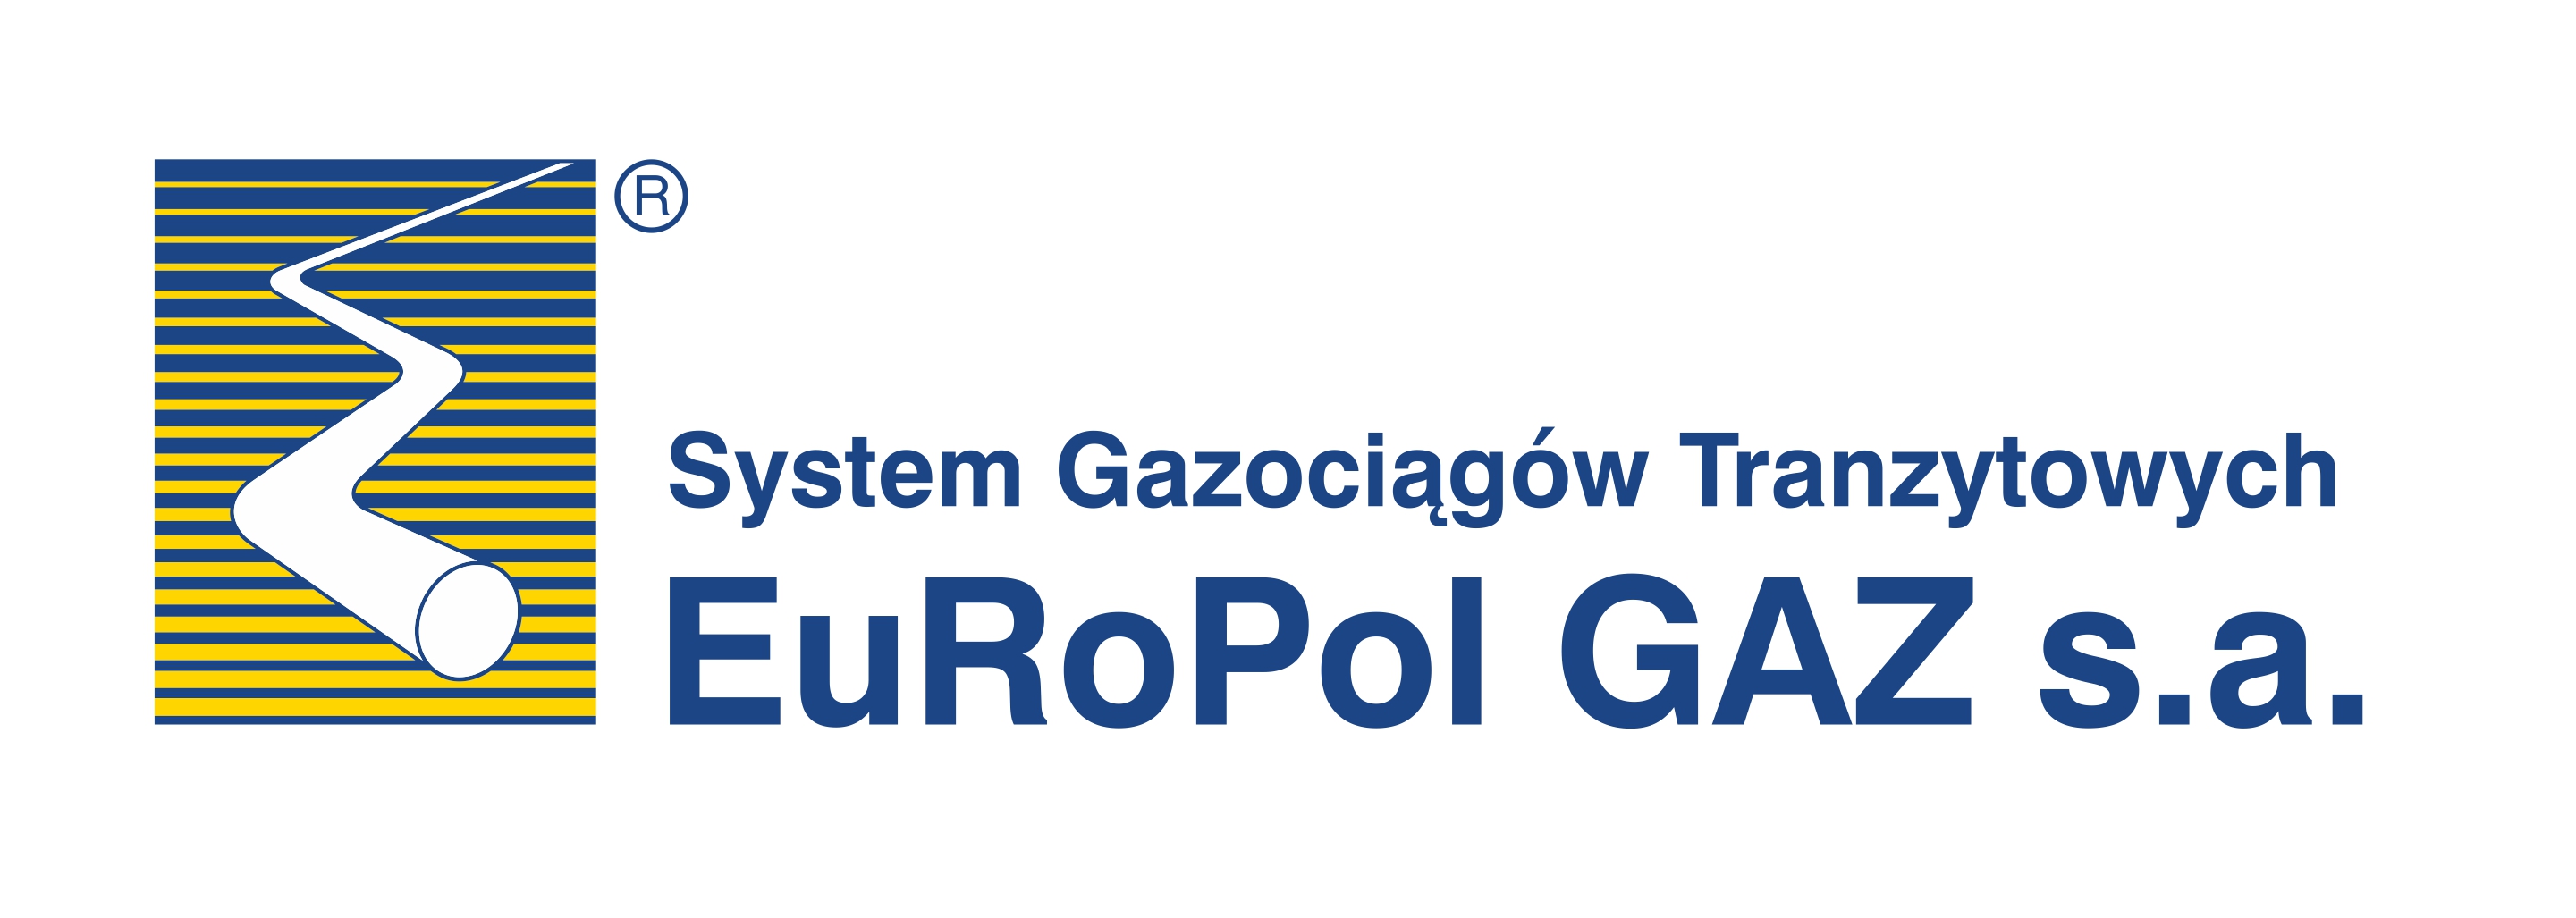 EuroPol Gaz logo